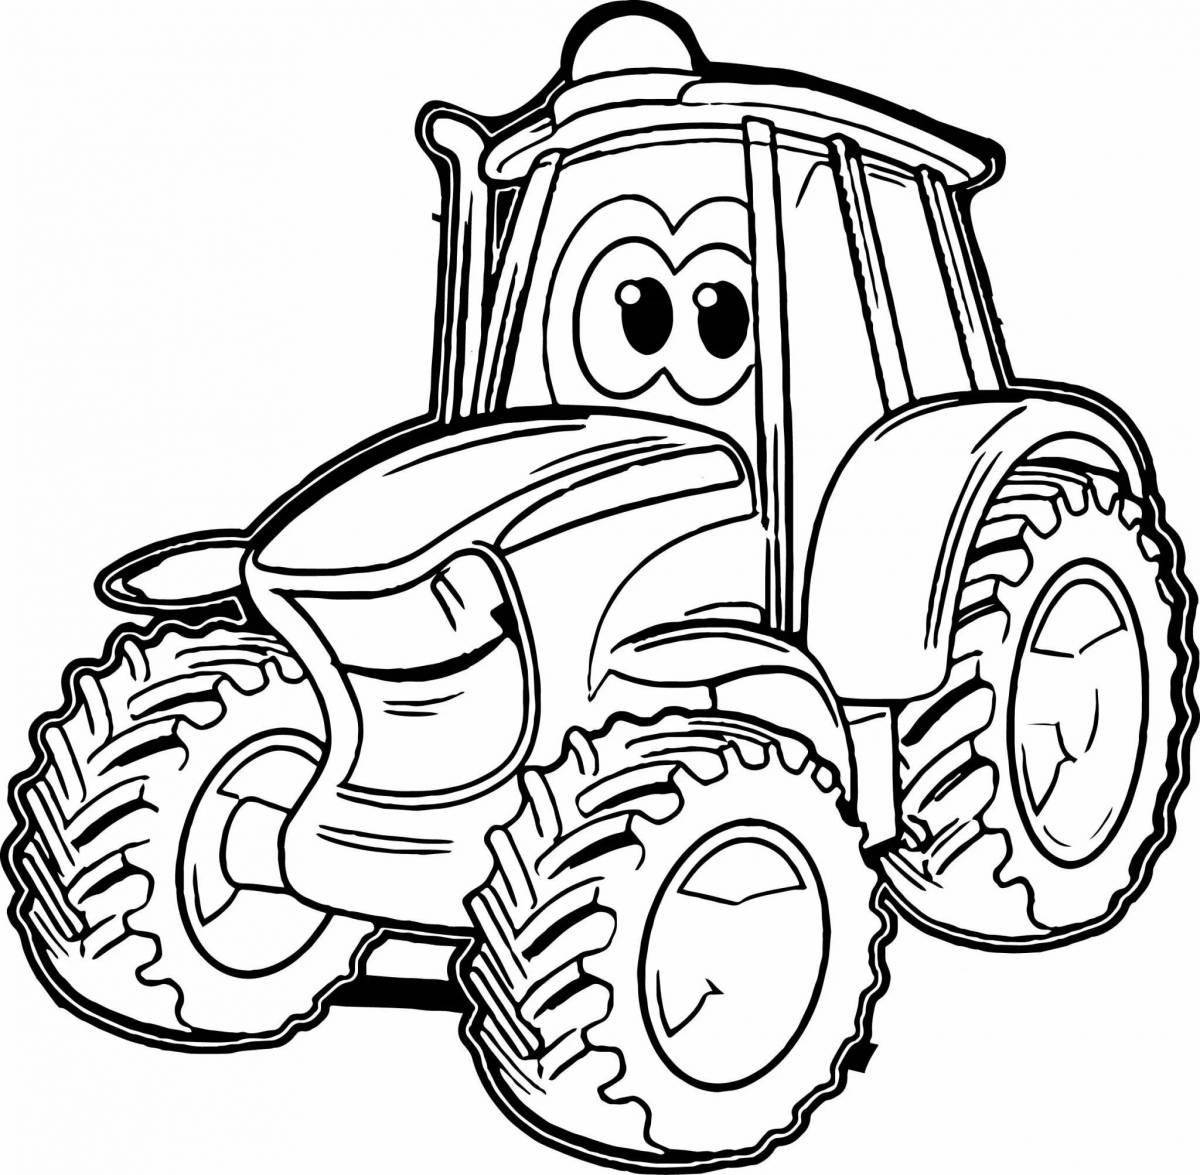 Adorable gosha tractor coloring page